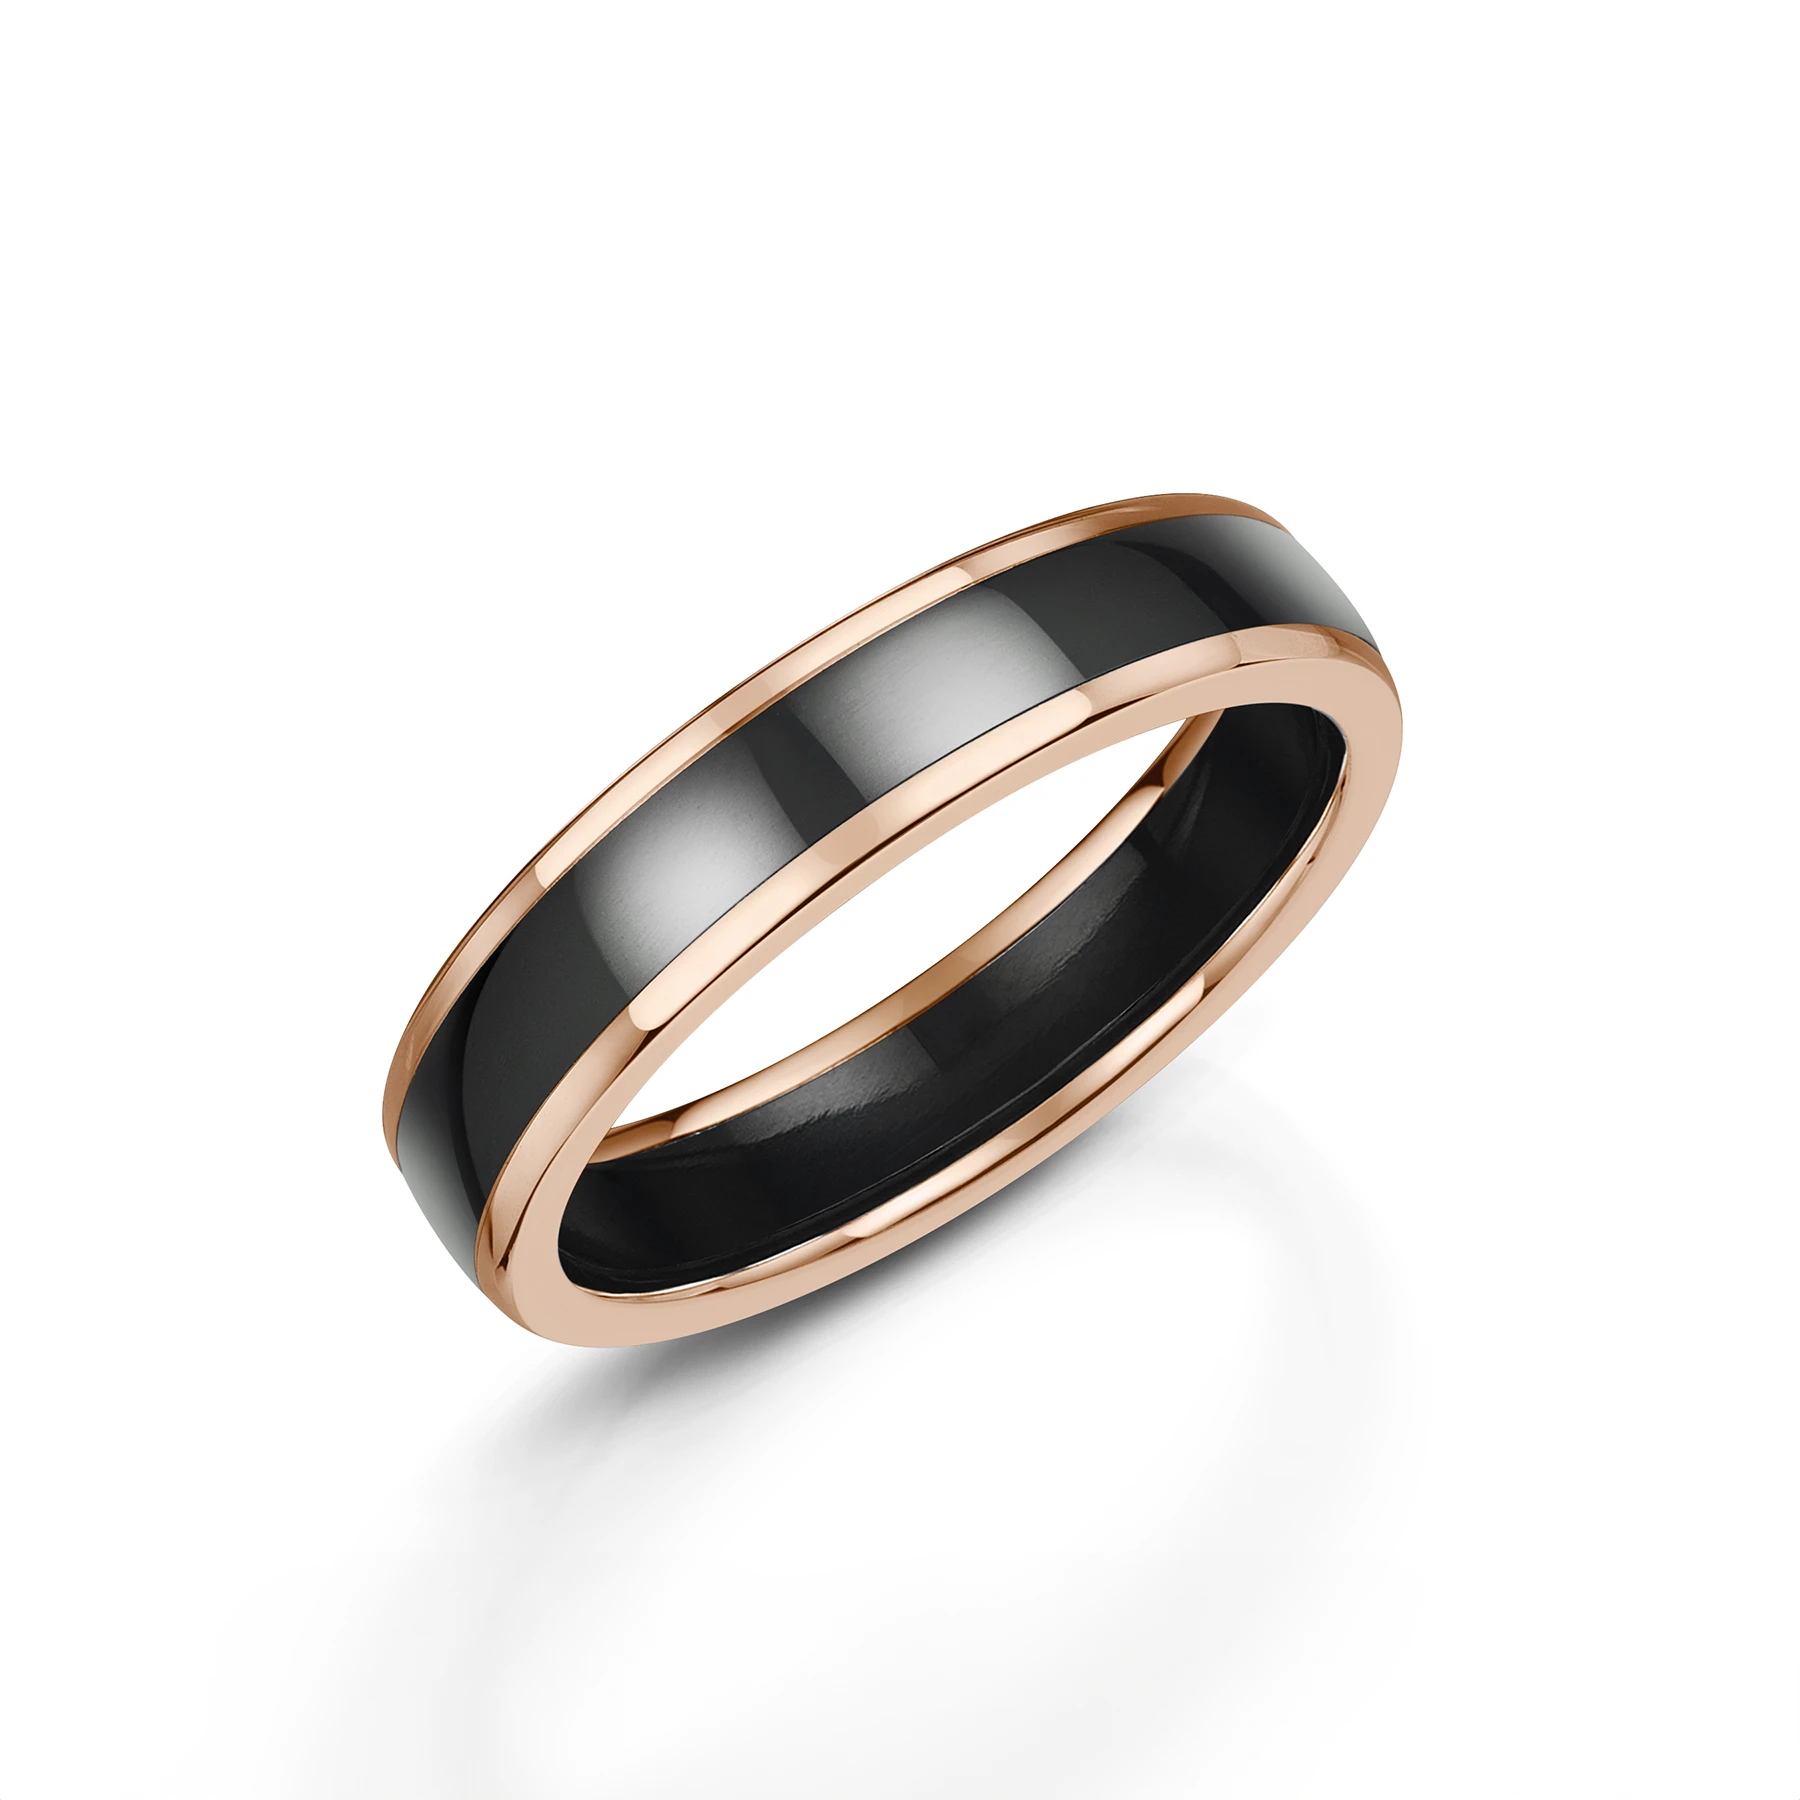 Polished Black Zirconium Wedding Ring with Rose Gold Edges